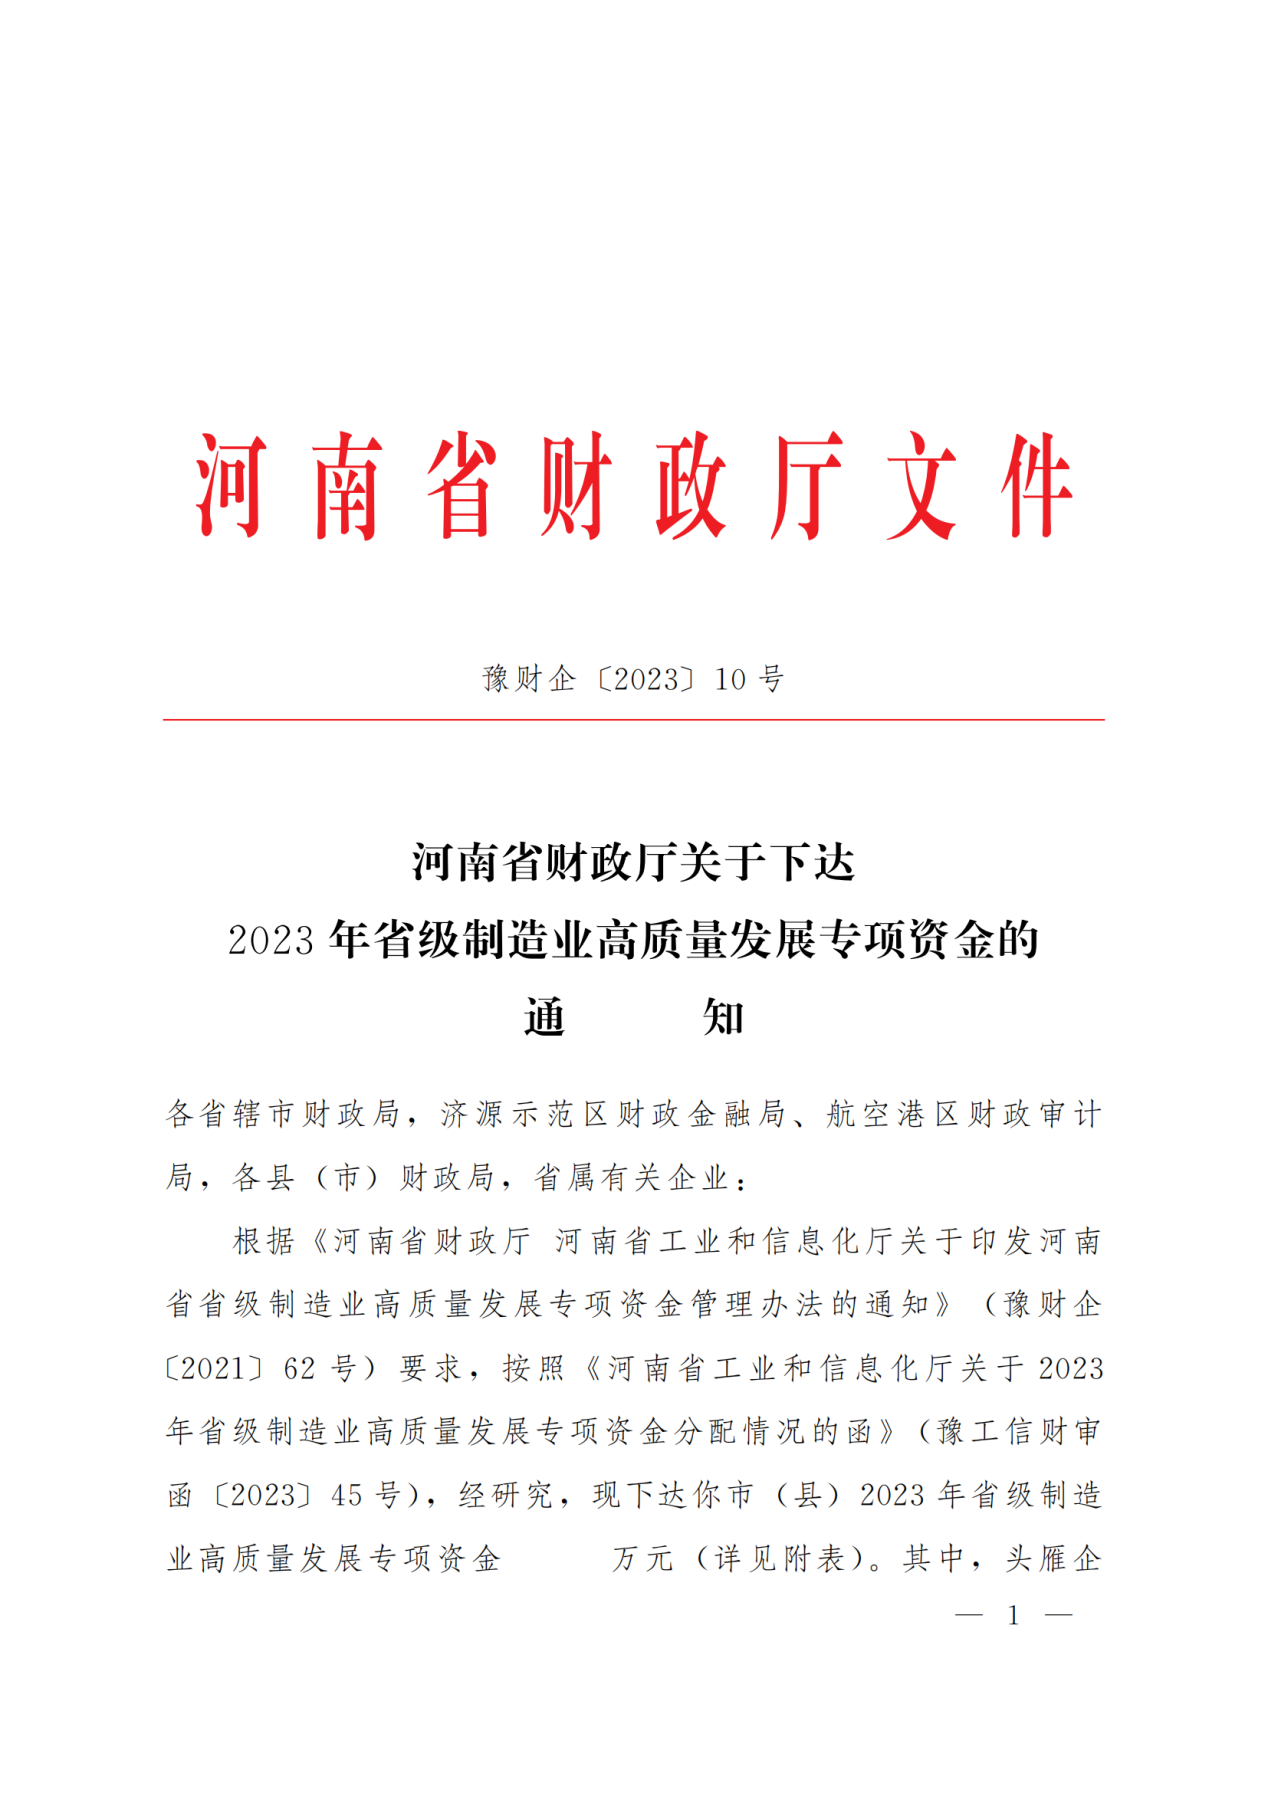 河南中鼎智建科技有限公司2023年省级制造业高质量发展专项资金拨付到位